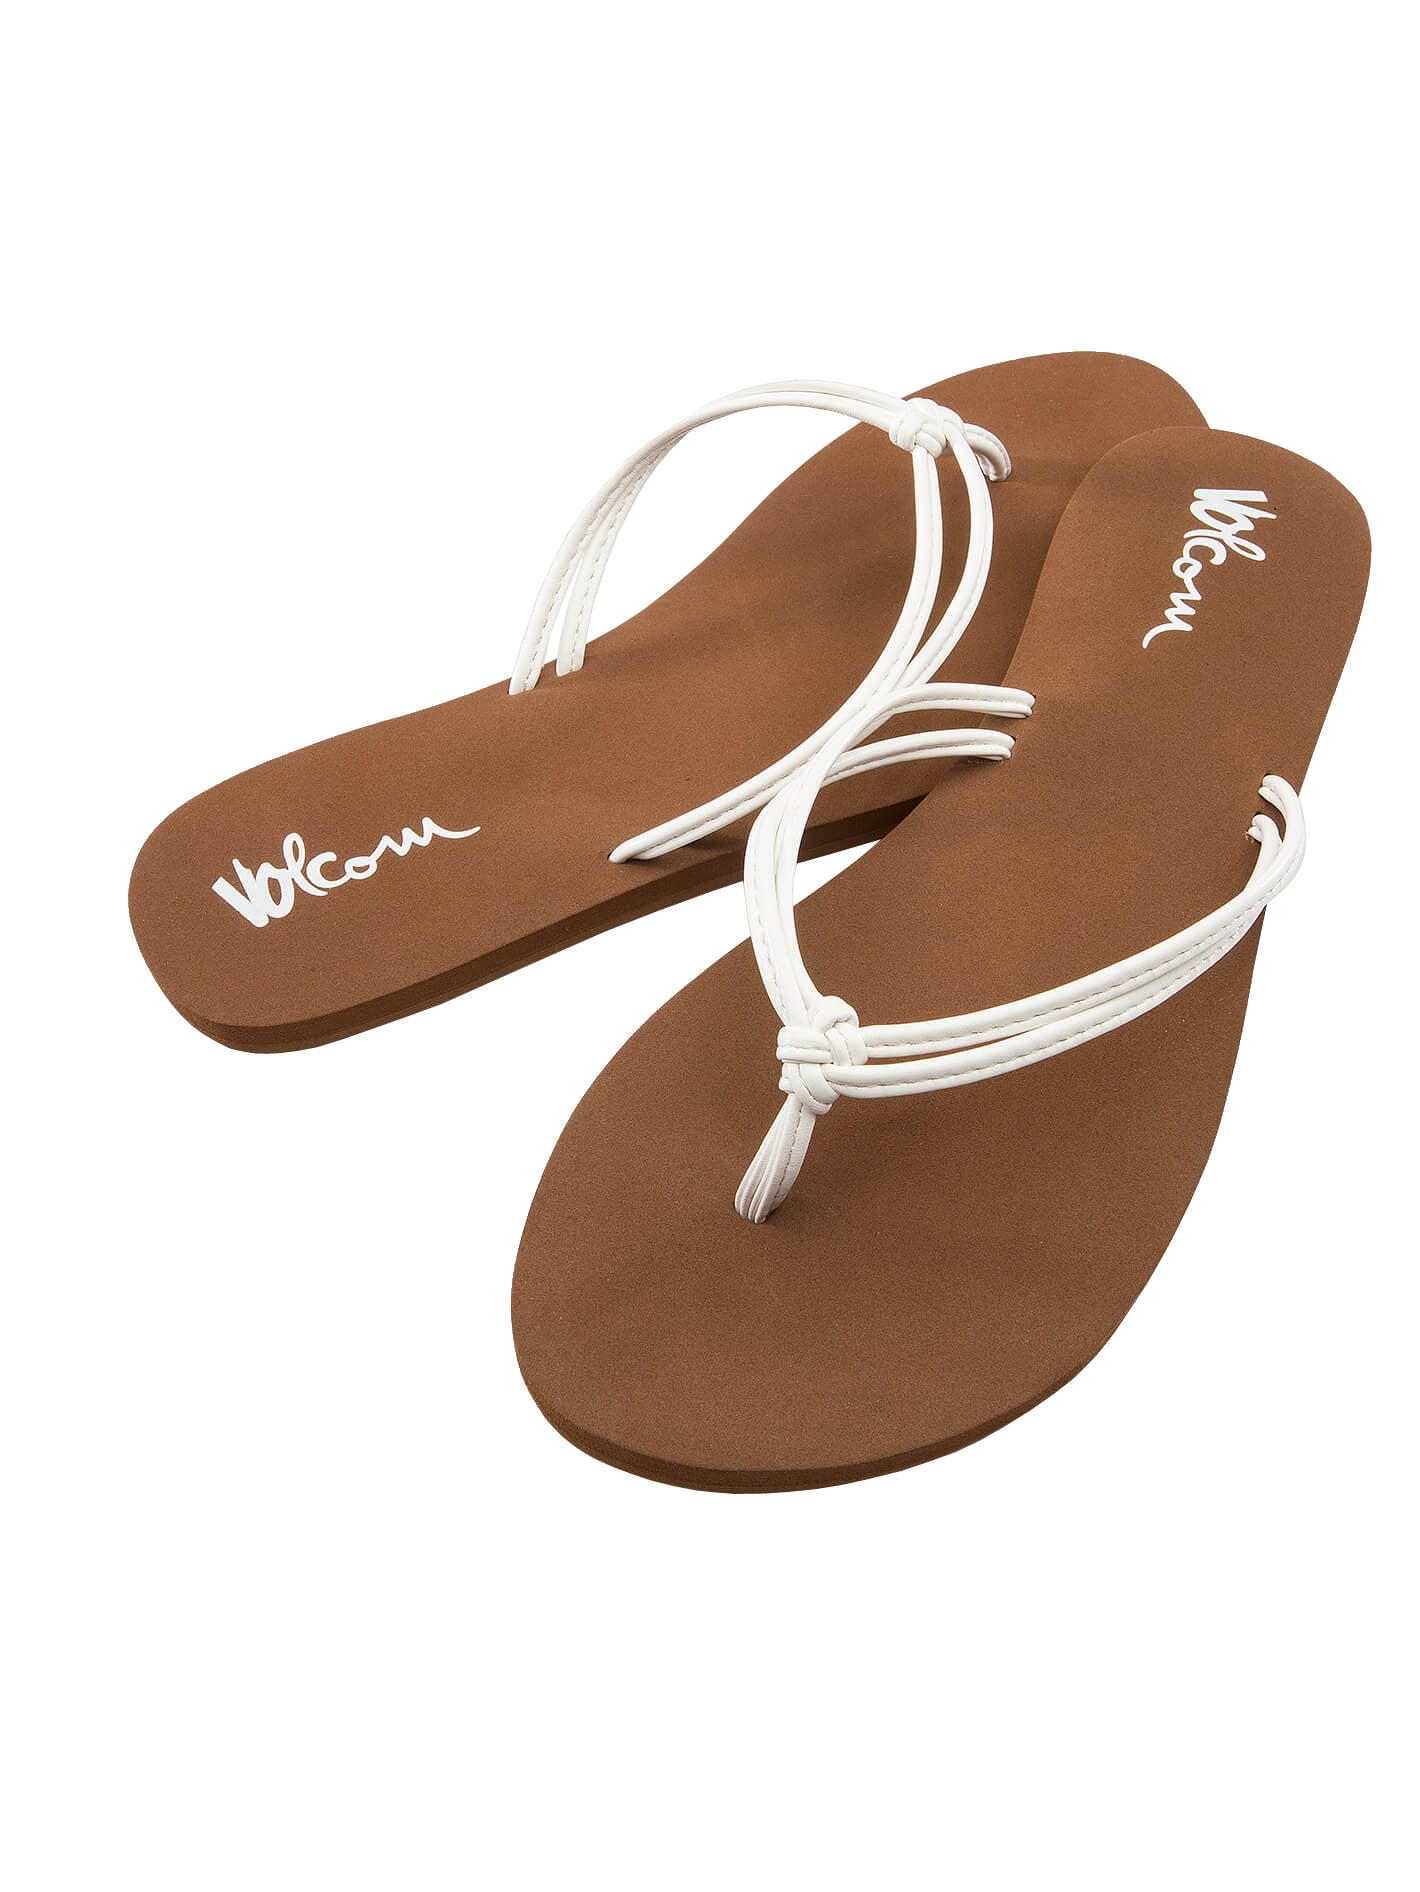 Volcom Forever and Ever 2 Womens Sandal WHT-White 11